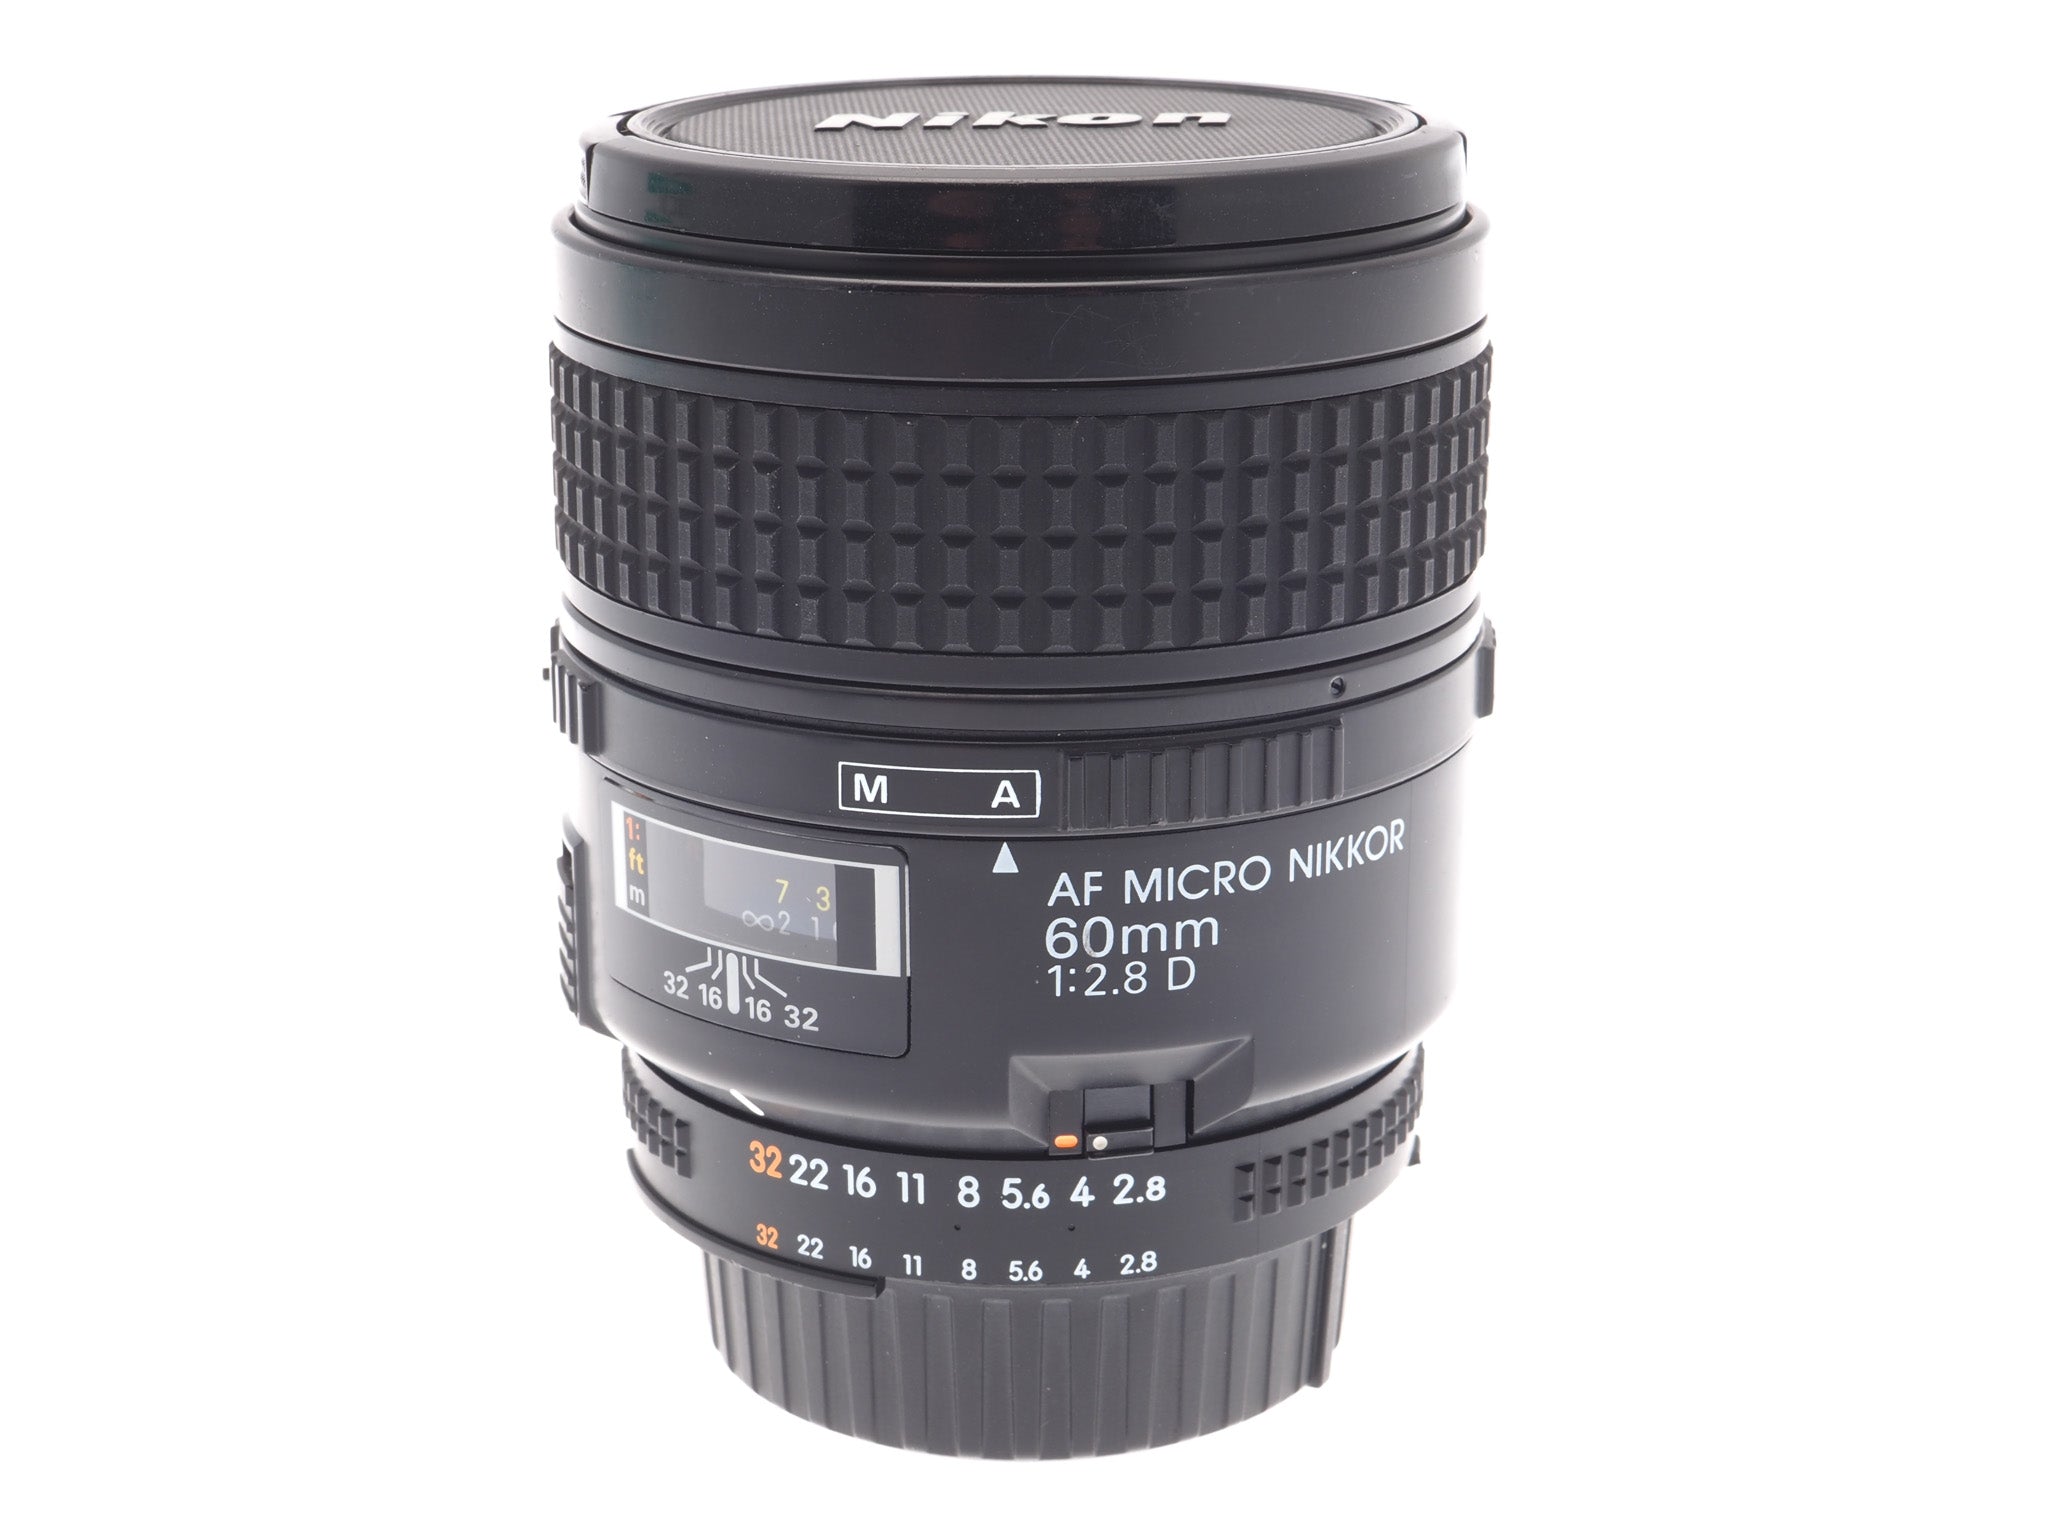 Nikon 60mm f2.8 D AF Micro-Nikkor - Lens